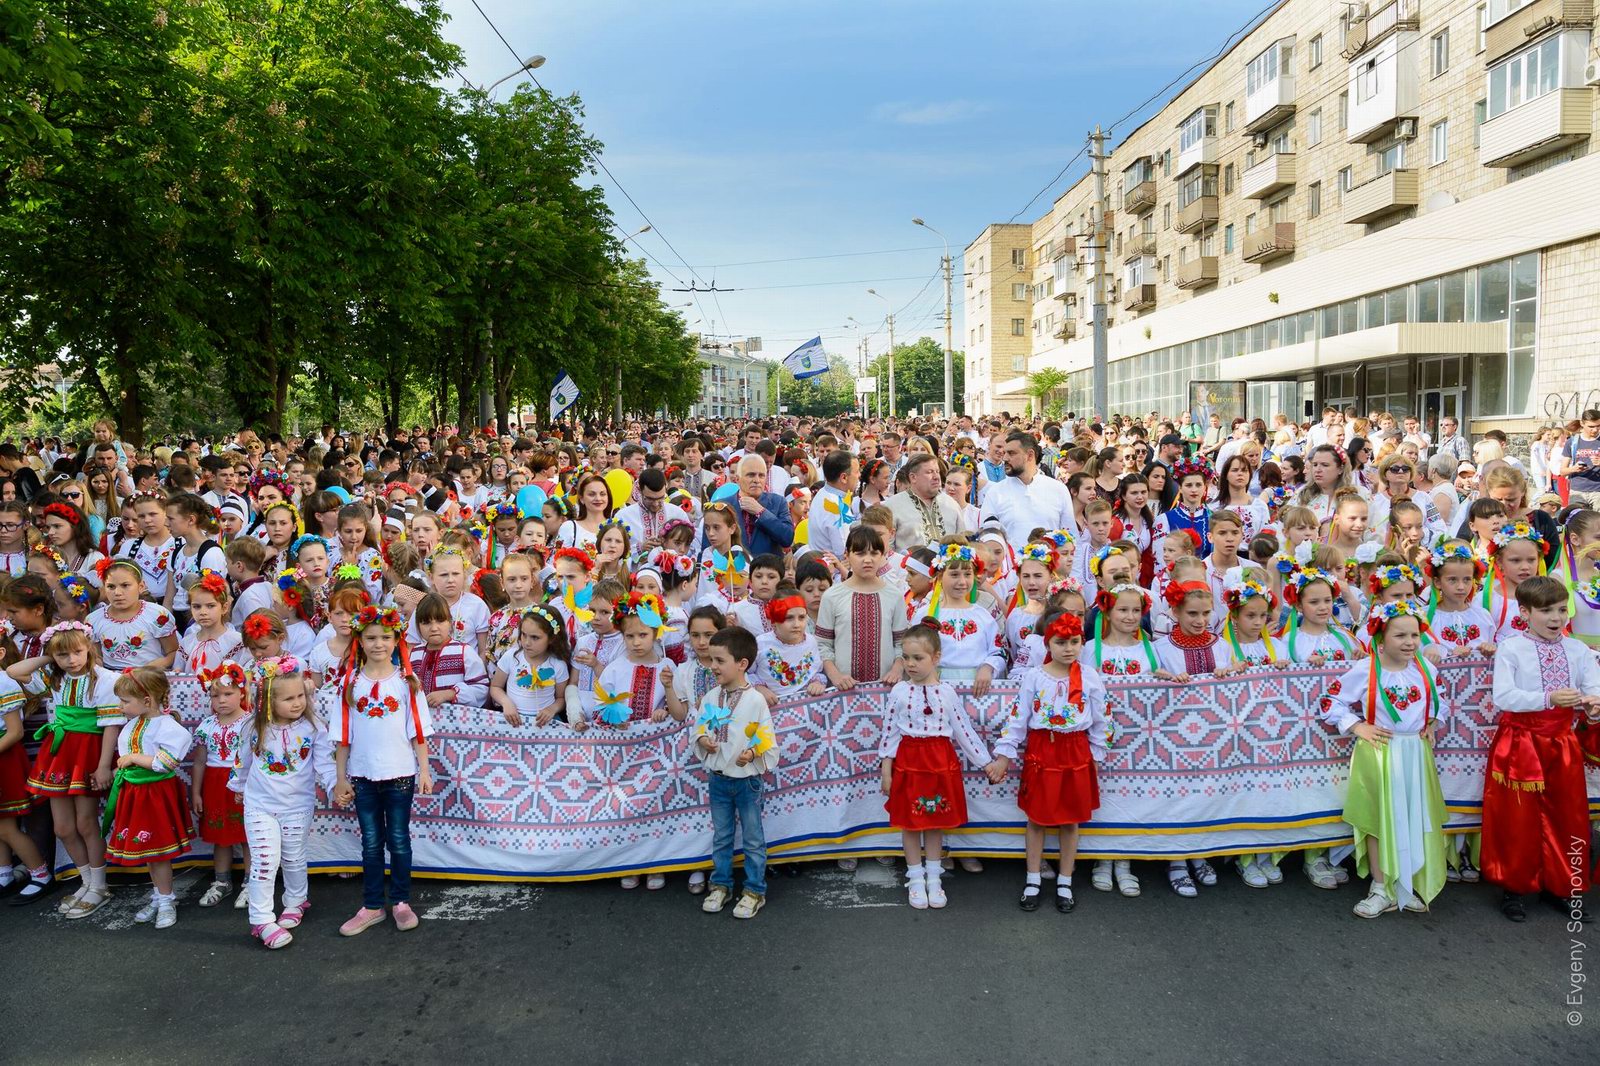 Vyshyvanka Day 2018 in Mariupol, Ukraine, photo 1